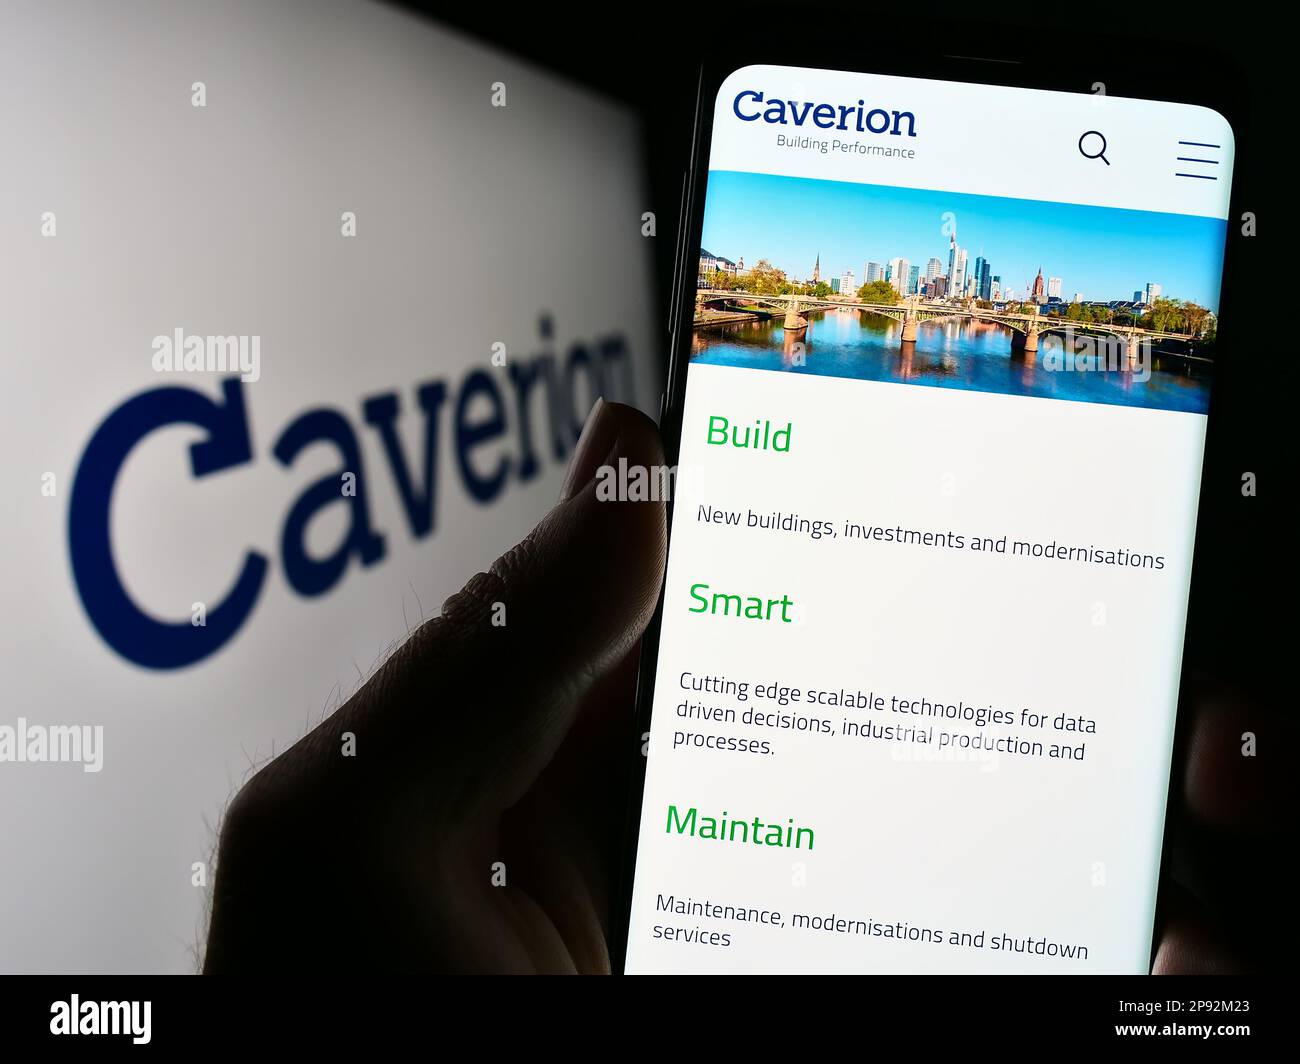 Personne tenant le téléphone cellulaire avec le site Web de la société de technologie du bâtiment Caverion Oyj sur l'écran devant le logo. Concentrez-vous sur le centre de l'écran du téléphone. Banque D'Images